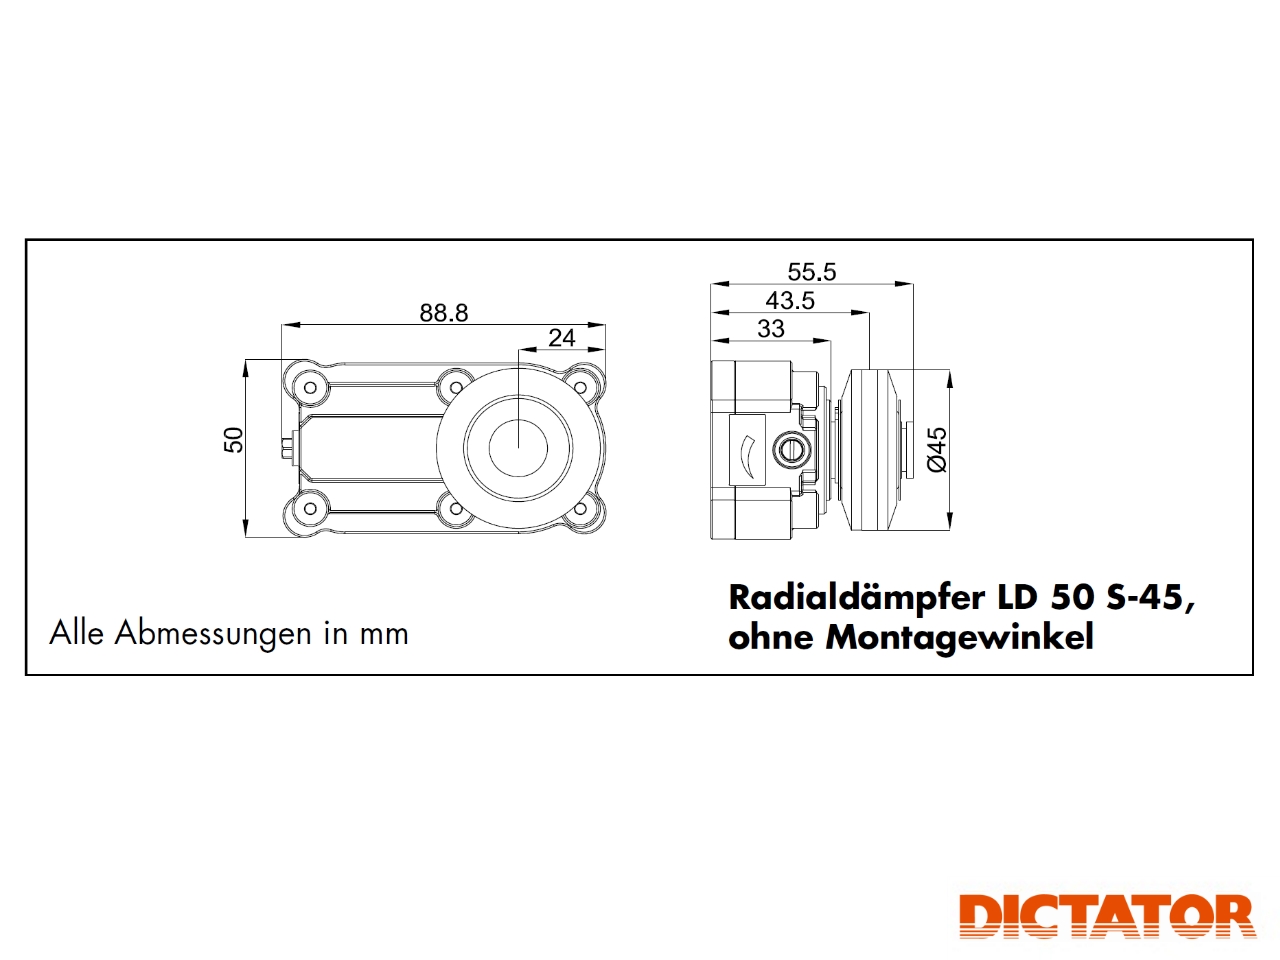 Radialdämpfer LD 50 S-45